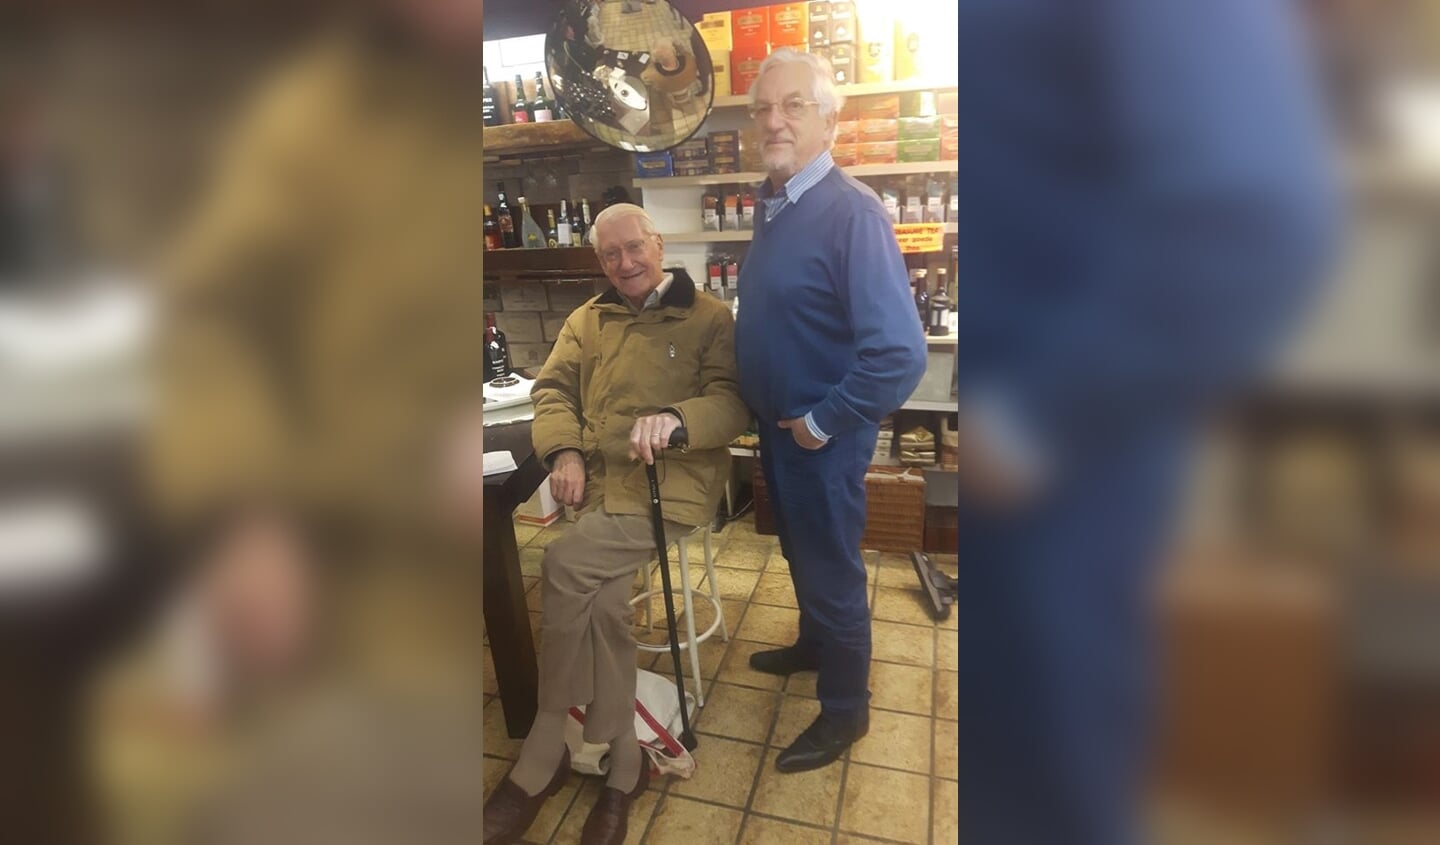 Cees samen met de Heer Kramer die al 66 jaar bij Ploeger in de winkel komt.